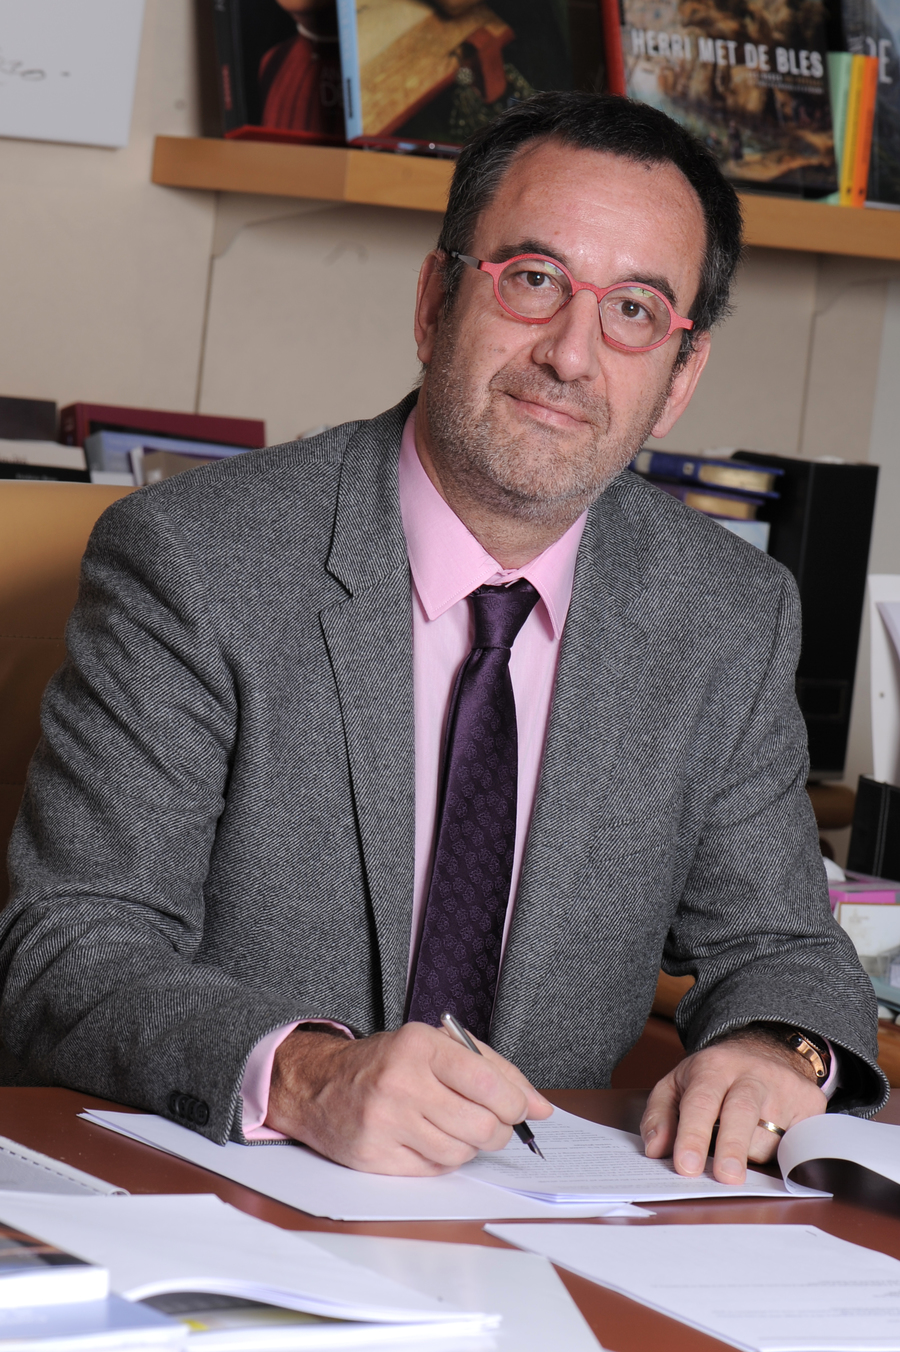 Arnaud Nourry, presidente da Hachette Livre, é um dos destaques do Business Club | © Eric Couderc